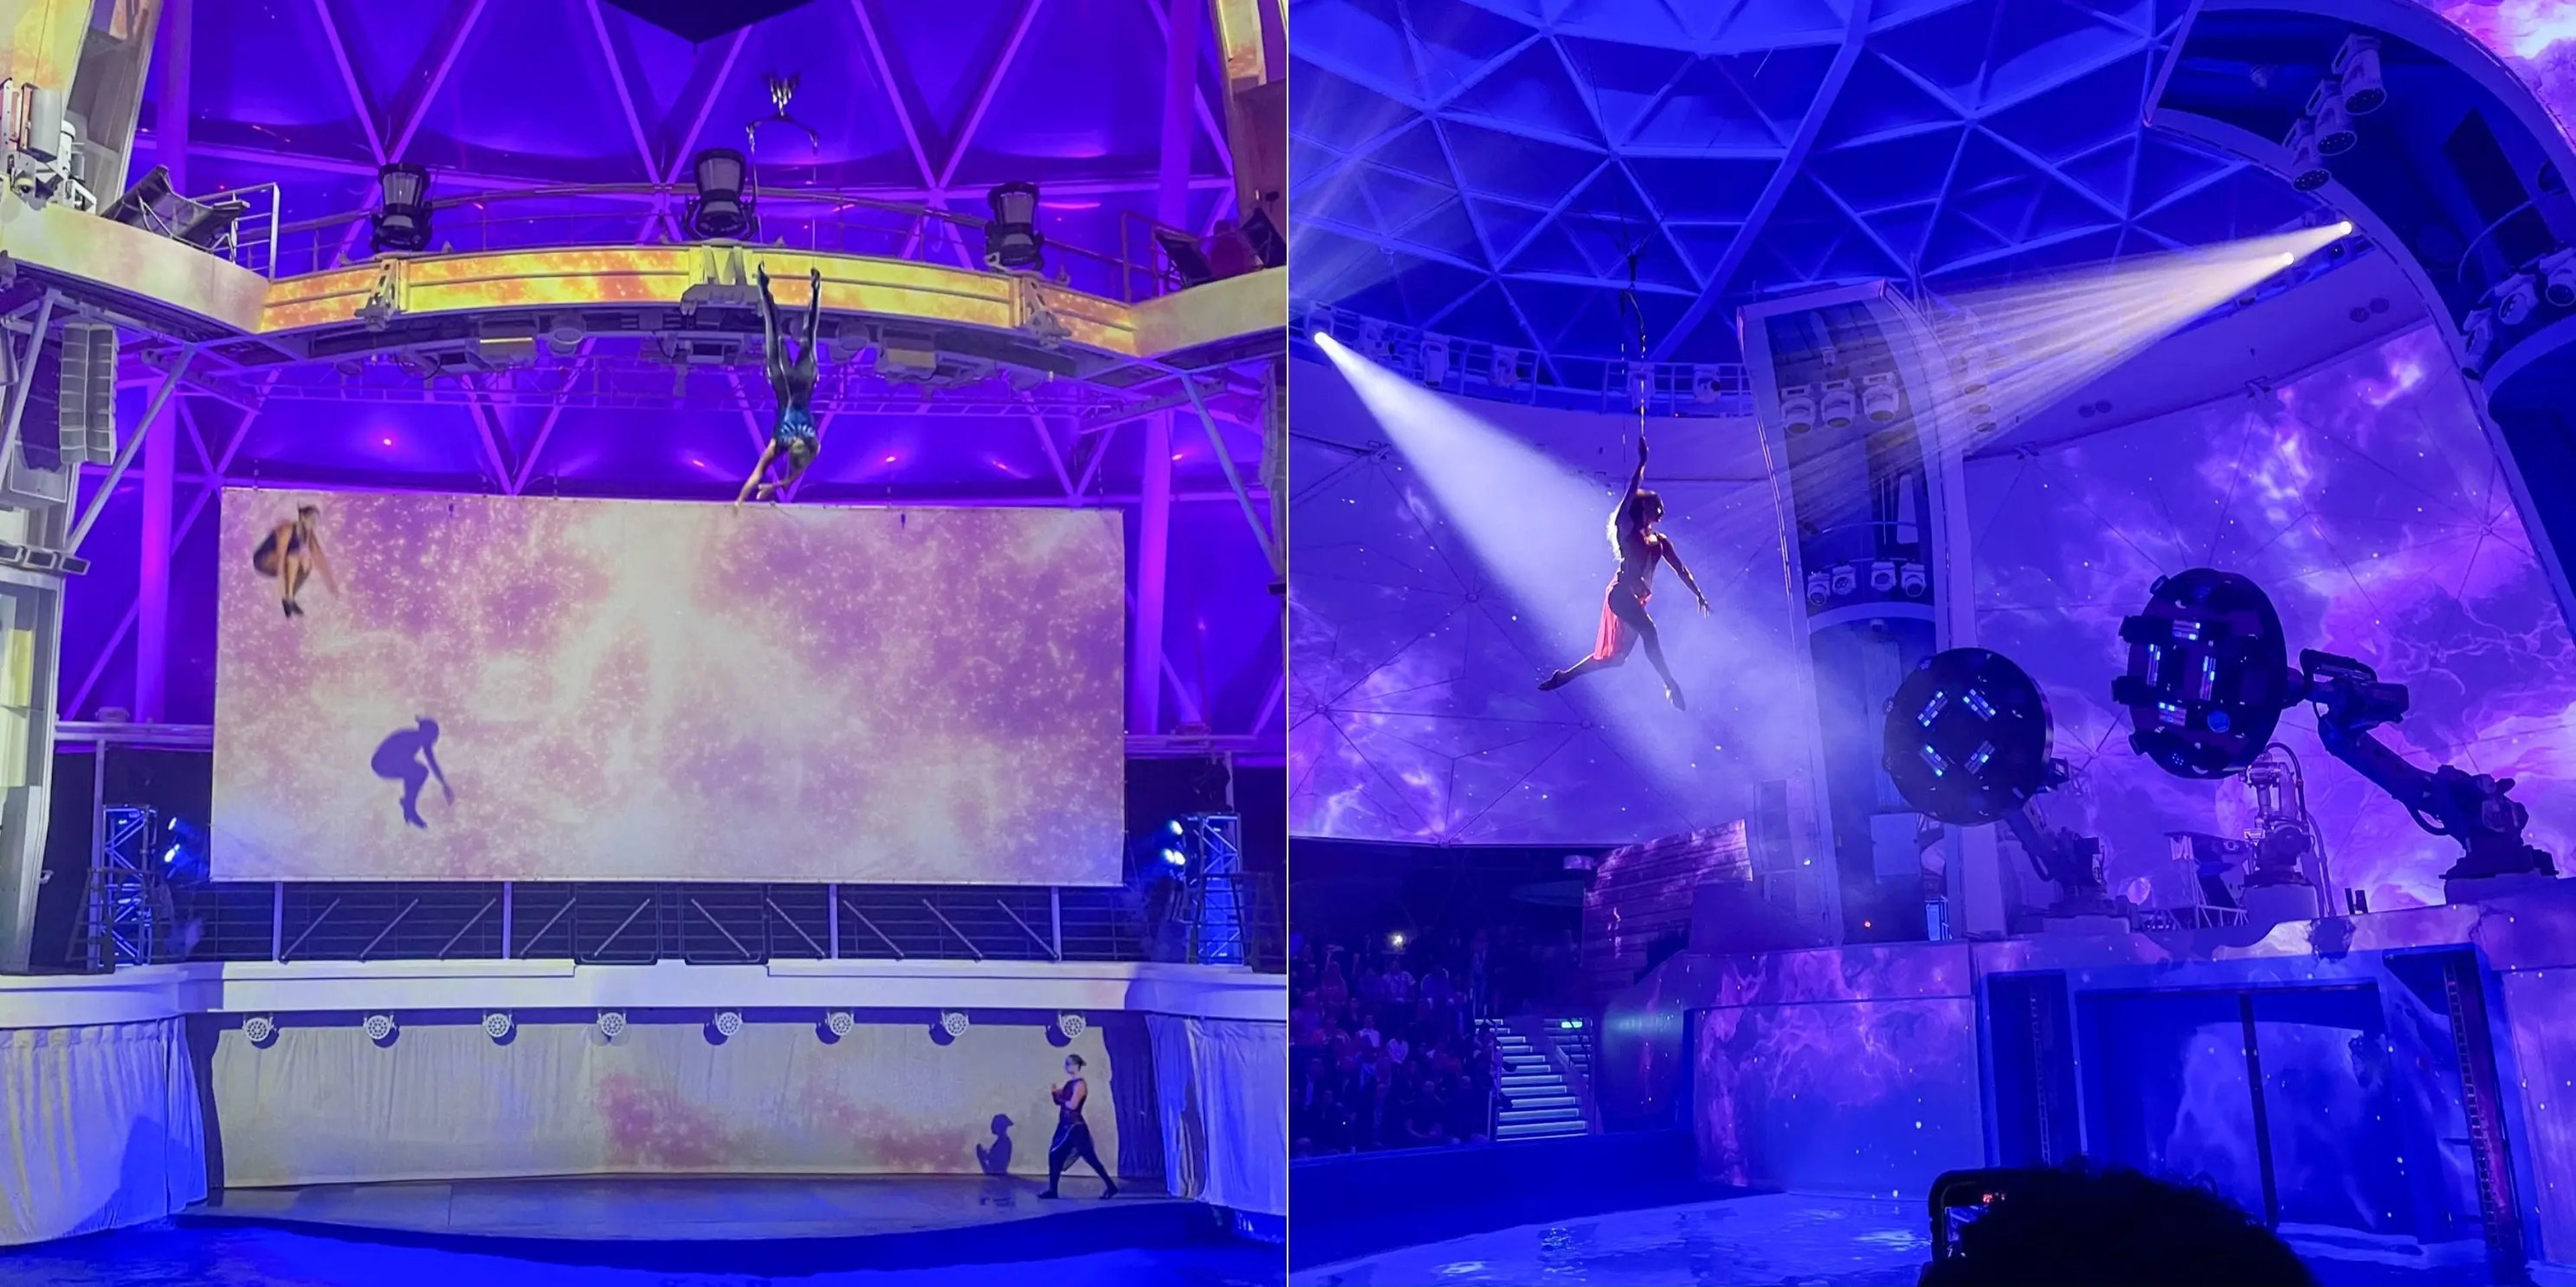 El Wonder of the Seas (izquierda) y el Icon of the Seas (derecha) tienen AquaTheaters que acogen espectáculos multidisciplinares con buceadores, bailarines y acróbatas. El teatro del nuevo buque también cuenta con brazos robóticos de 2,7 metros de altura.